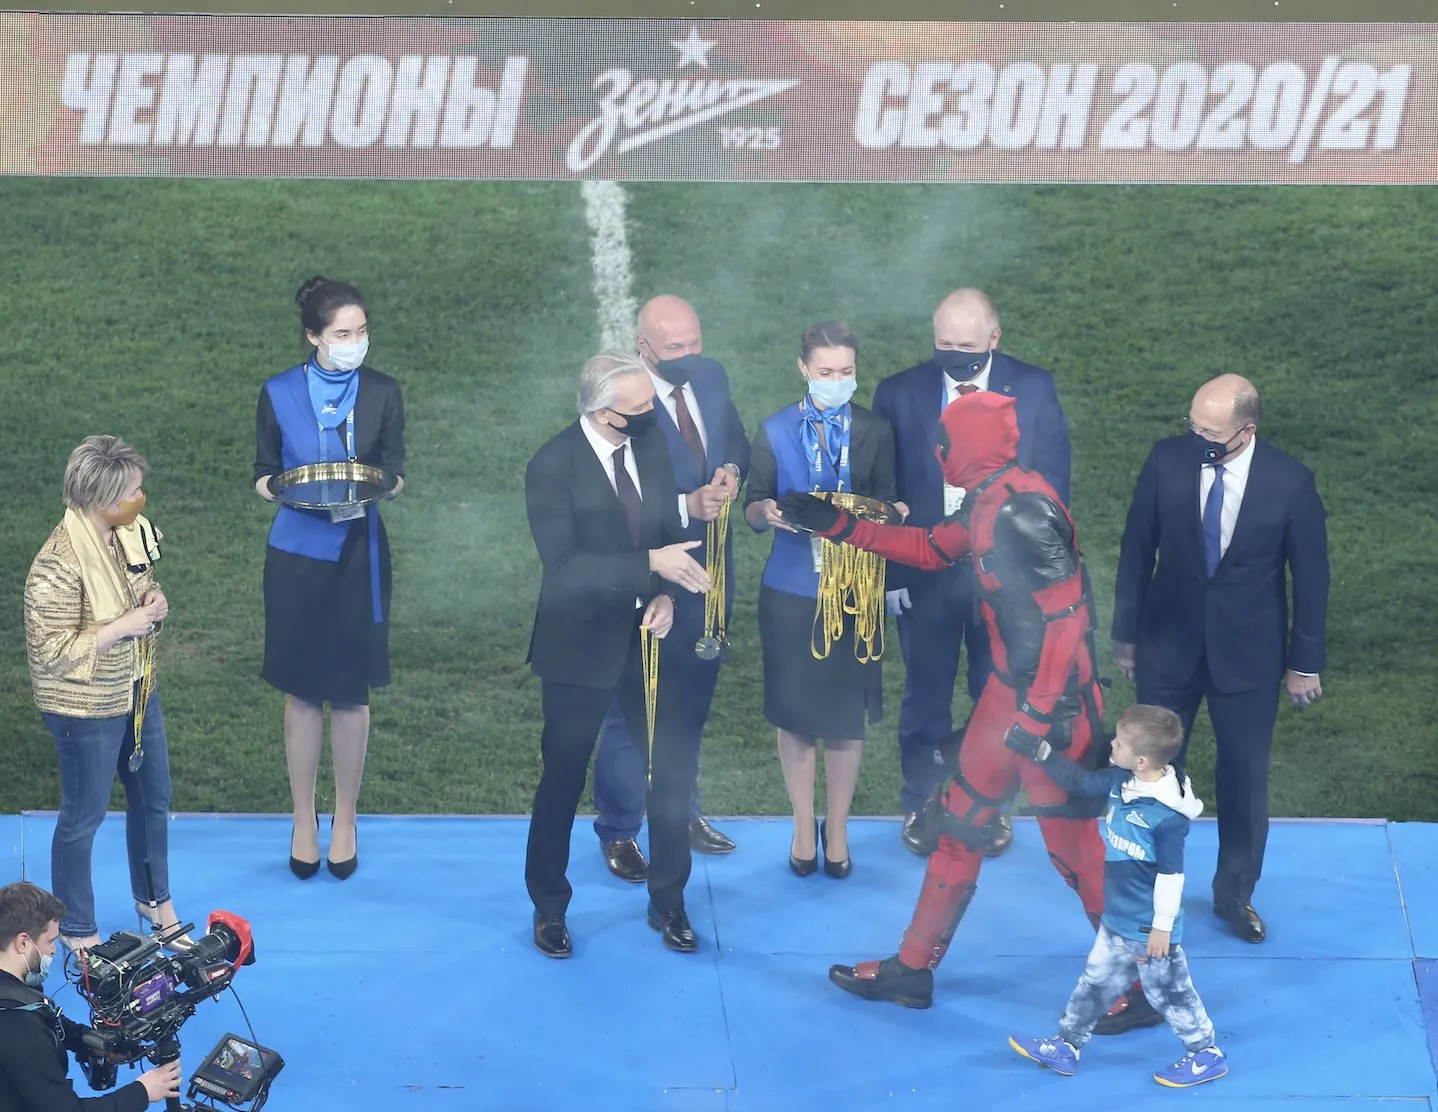 Dzyuba vestido de Deadpool na premiação do Zenit campeão russo